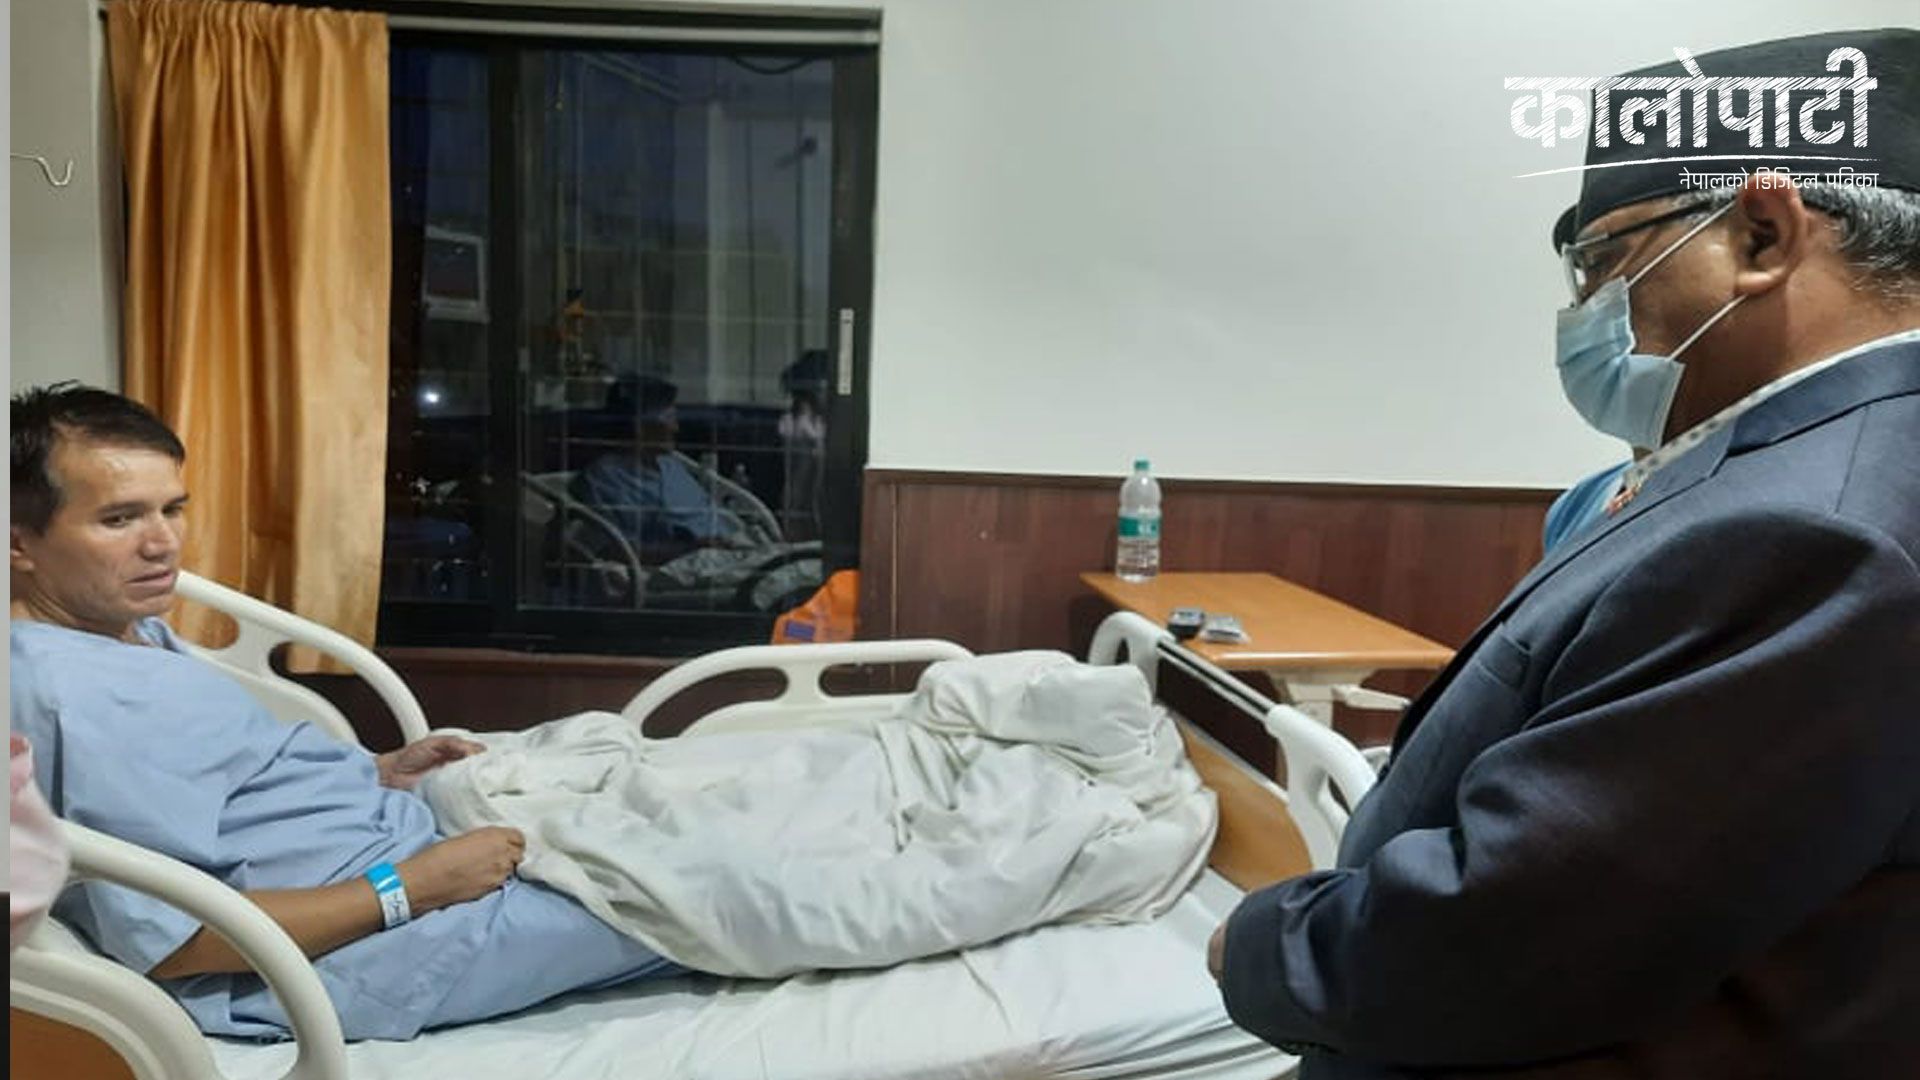 कृष्ण केसीको स्वास्थ्य अवस्था बुझ्न प्रचण्ड दाहालपुगे नर्भिक अस्पताल